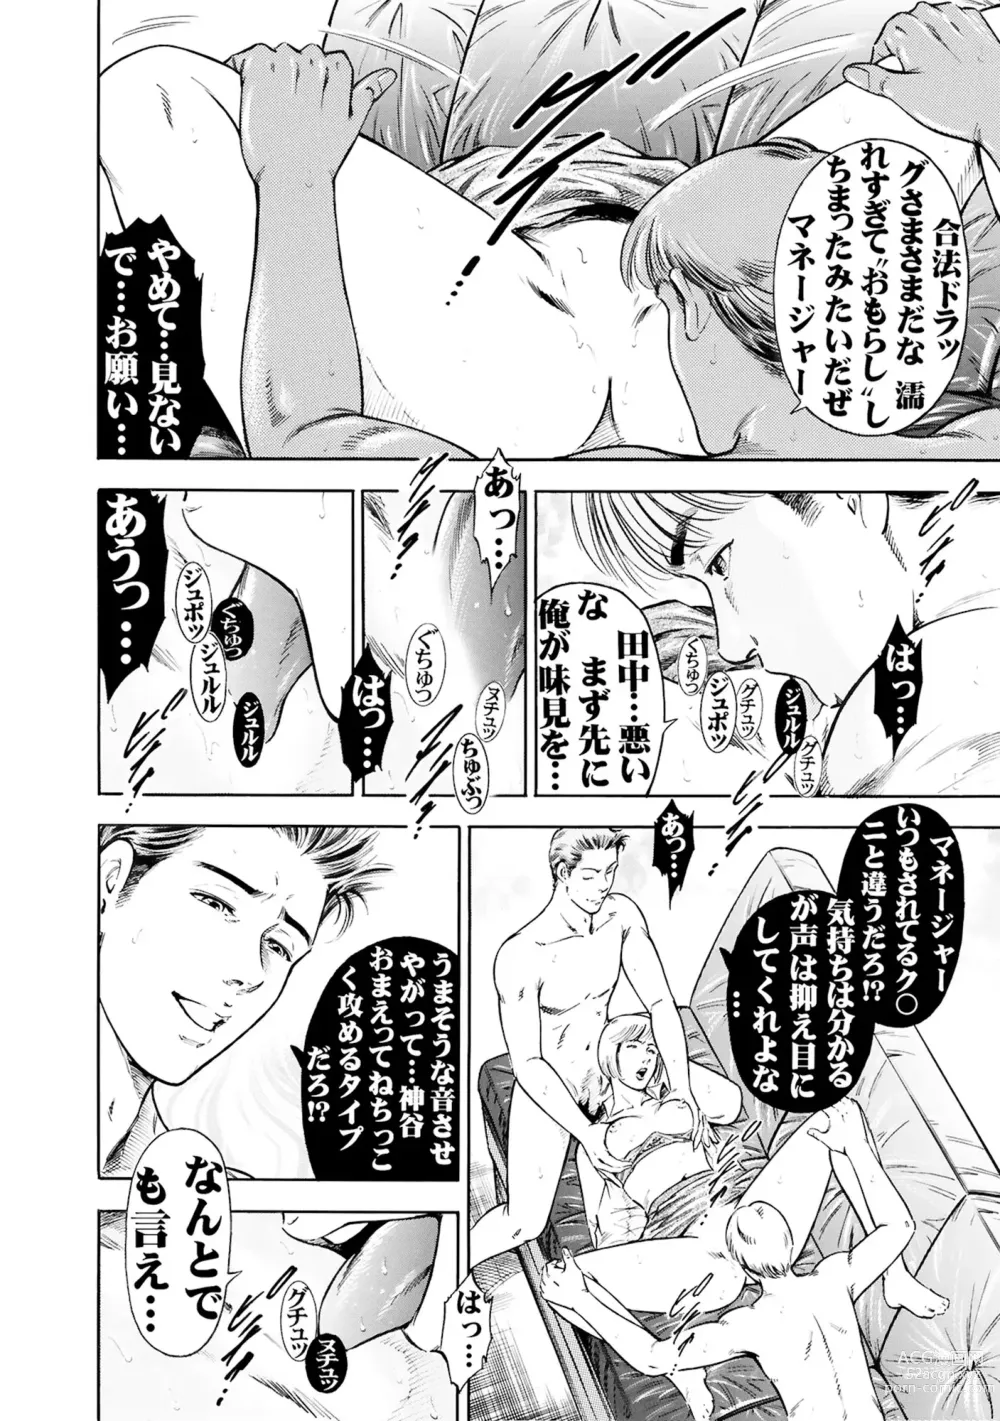 Page 18 of manga Jitsuroku Shouwaru 3 Bijin Joushi Biyaku o Nomasare Buka no SEX Doll ni